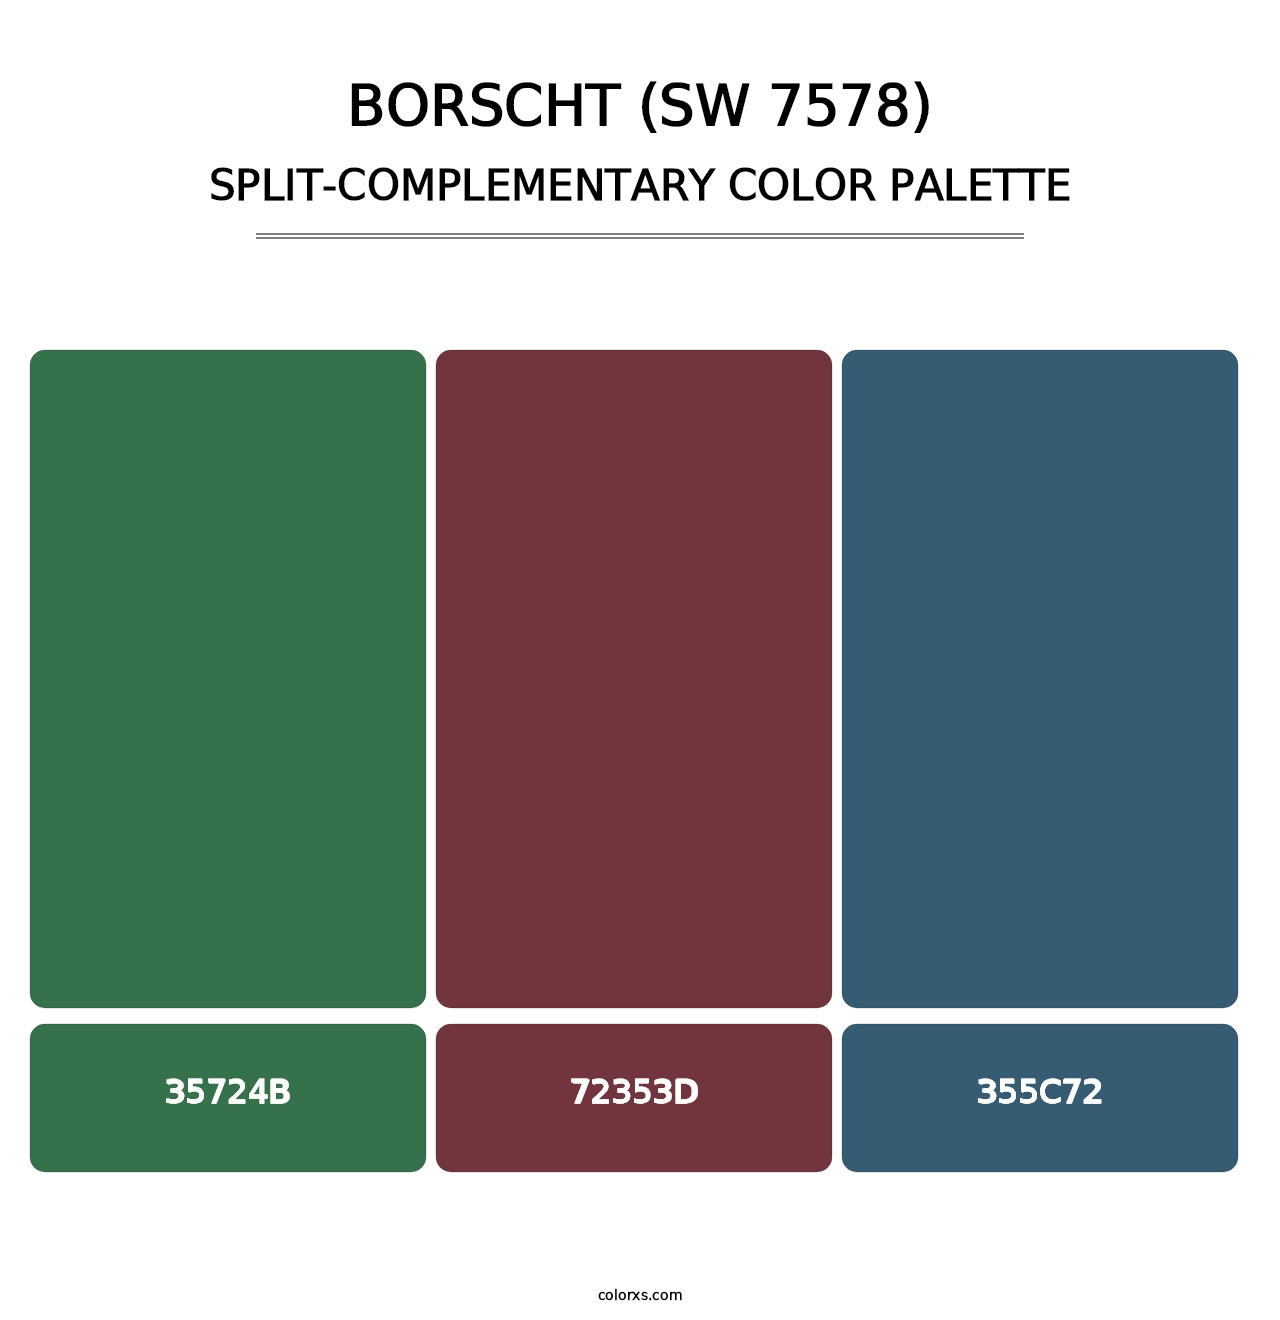 Borscht (SW 7578) - Split-Complementary Color Palette